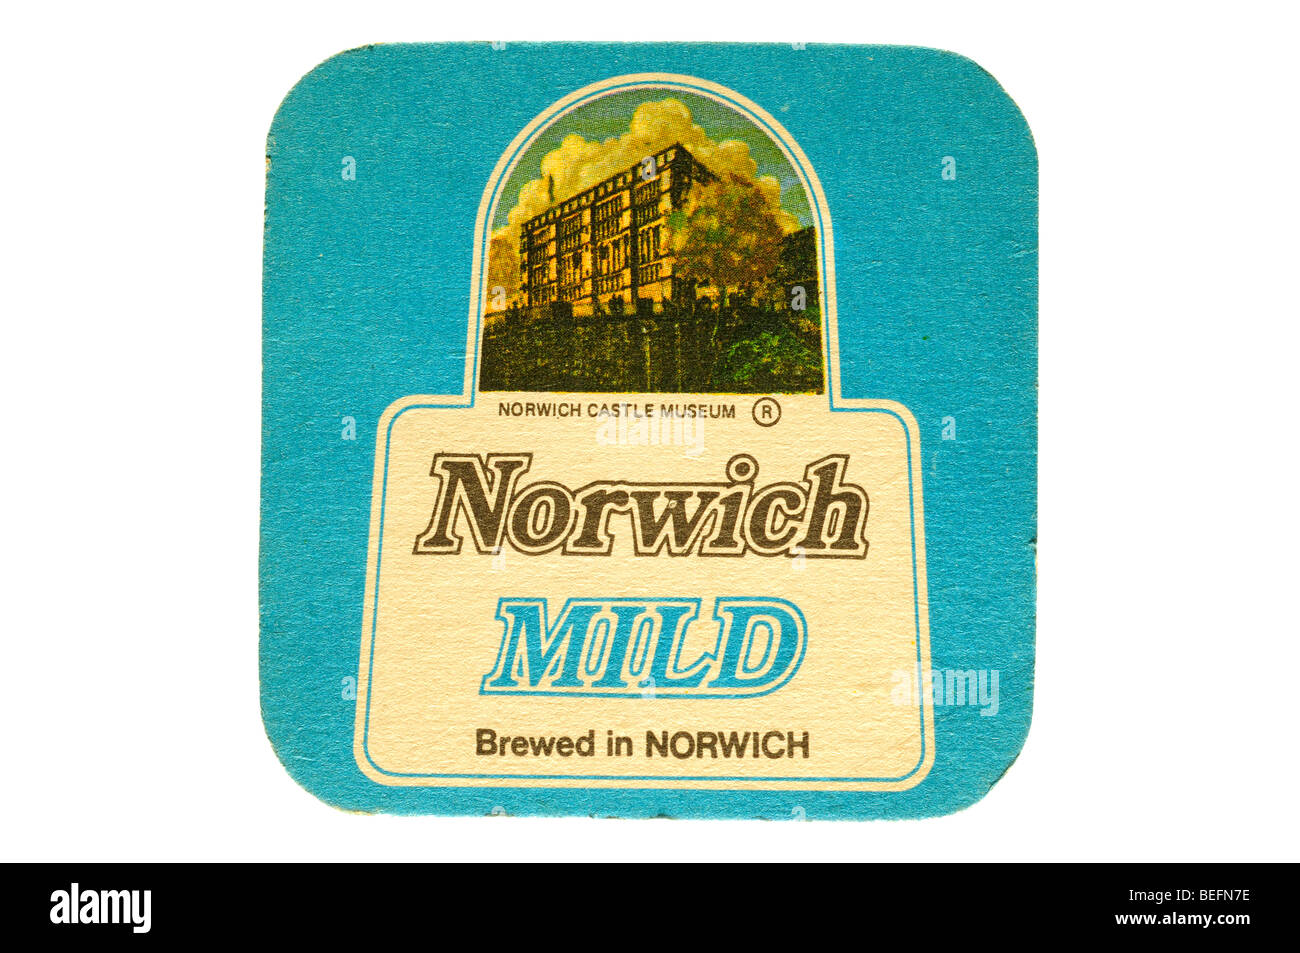 Fabricada en suave norwich norwich norwich Castle Museum beer mat Foto de stock